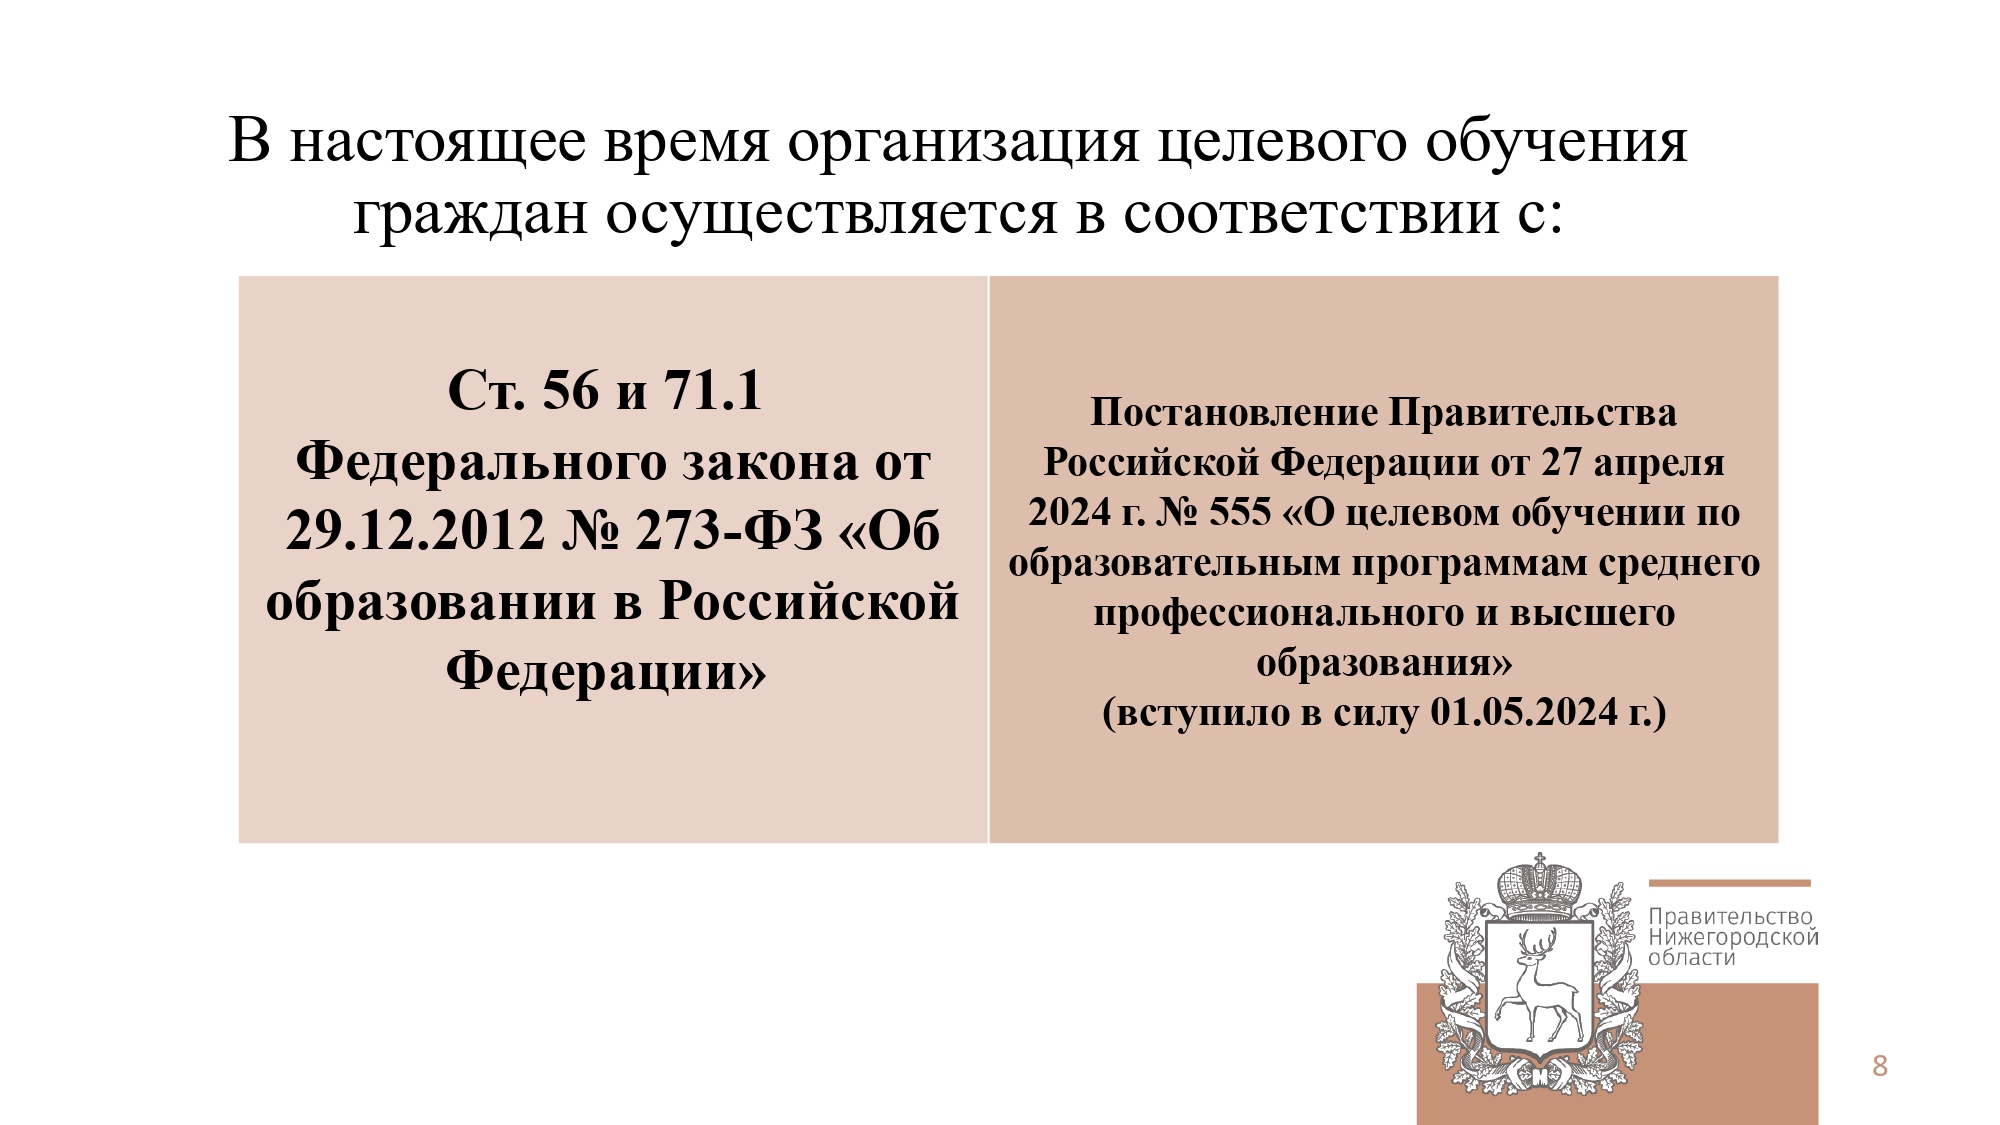 В настоящее время организация целевого обучения граждан осуществляется в соответствии с ст. 54 и 71.1. и Постановлением Правительства РФ от 27.04.2024 №555